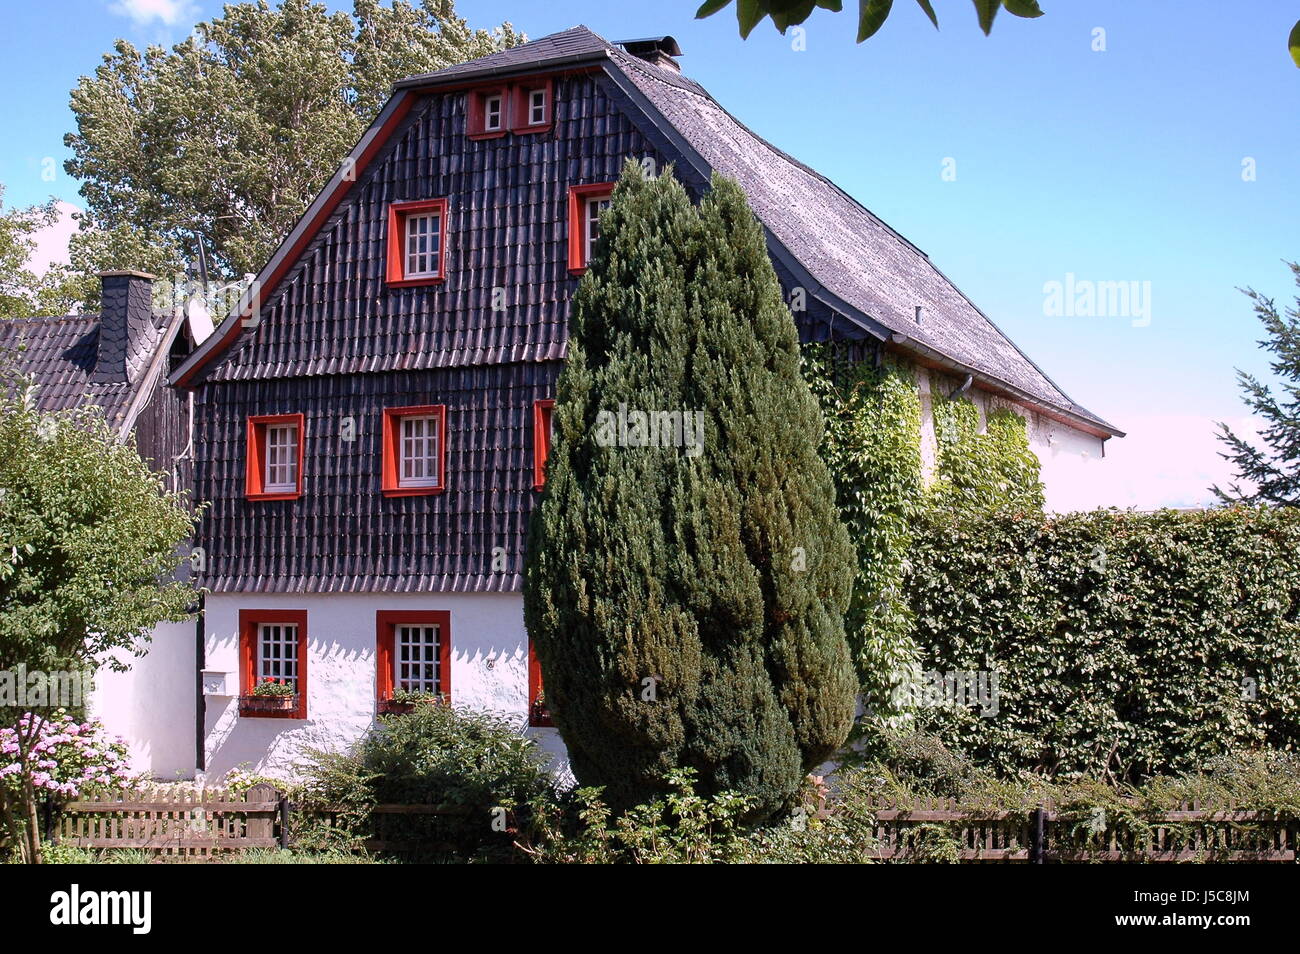 Edificio de la casa de árbol arbusto valla disimulada cobertura buzón pizarra mosaico nostálgico Foto de stock